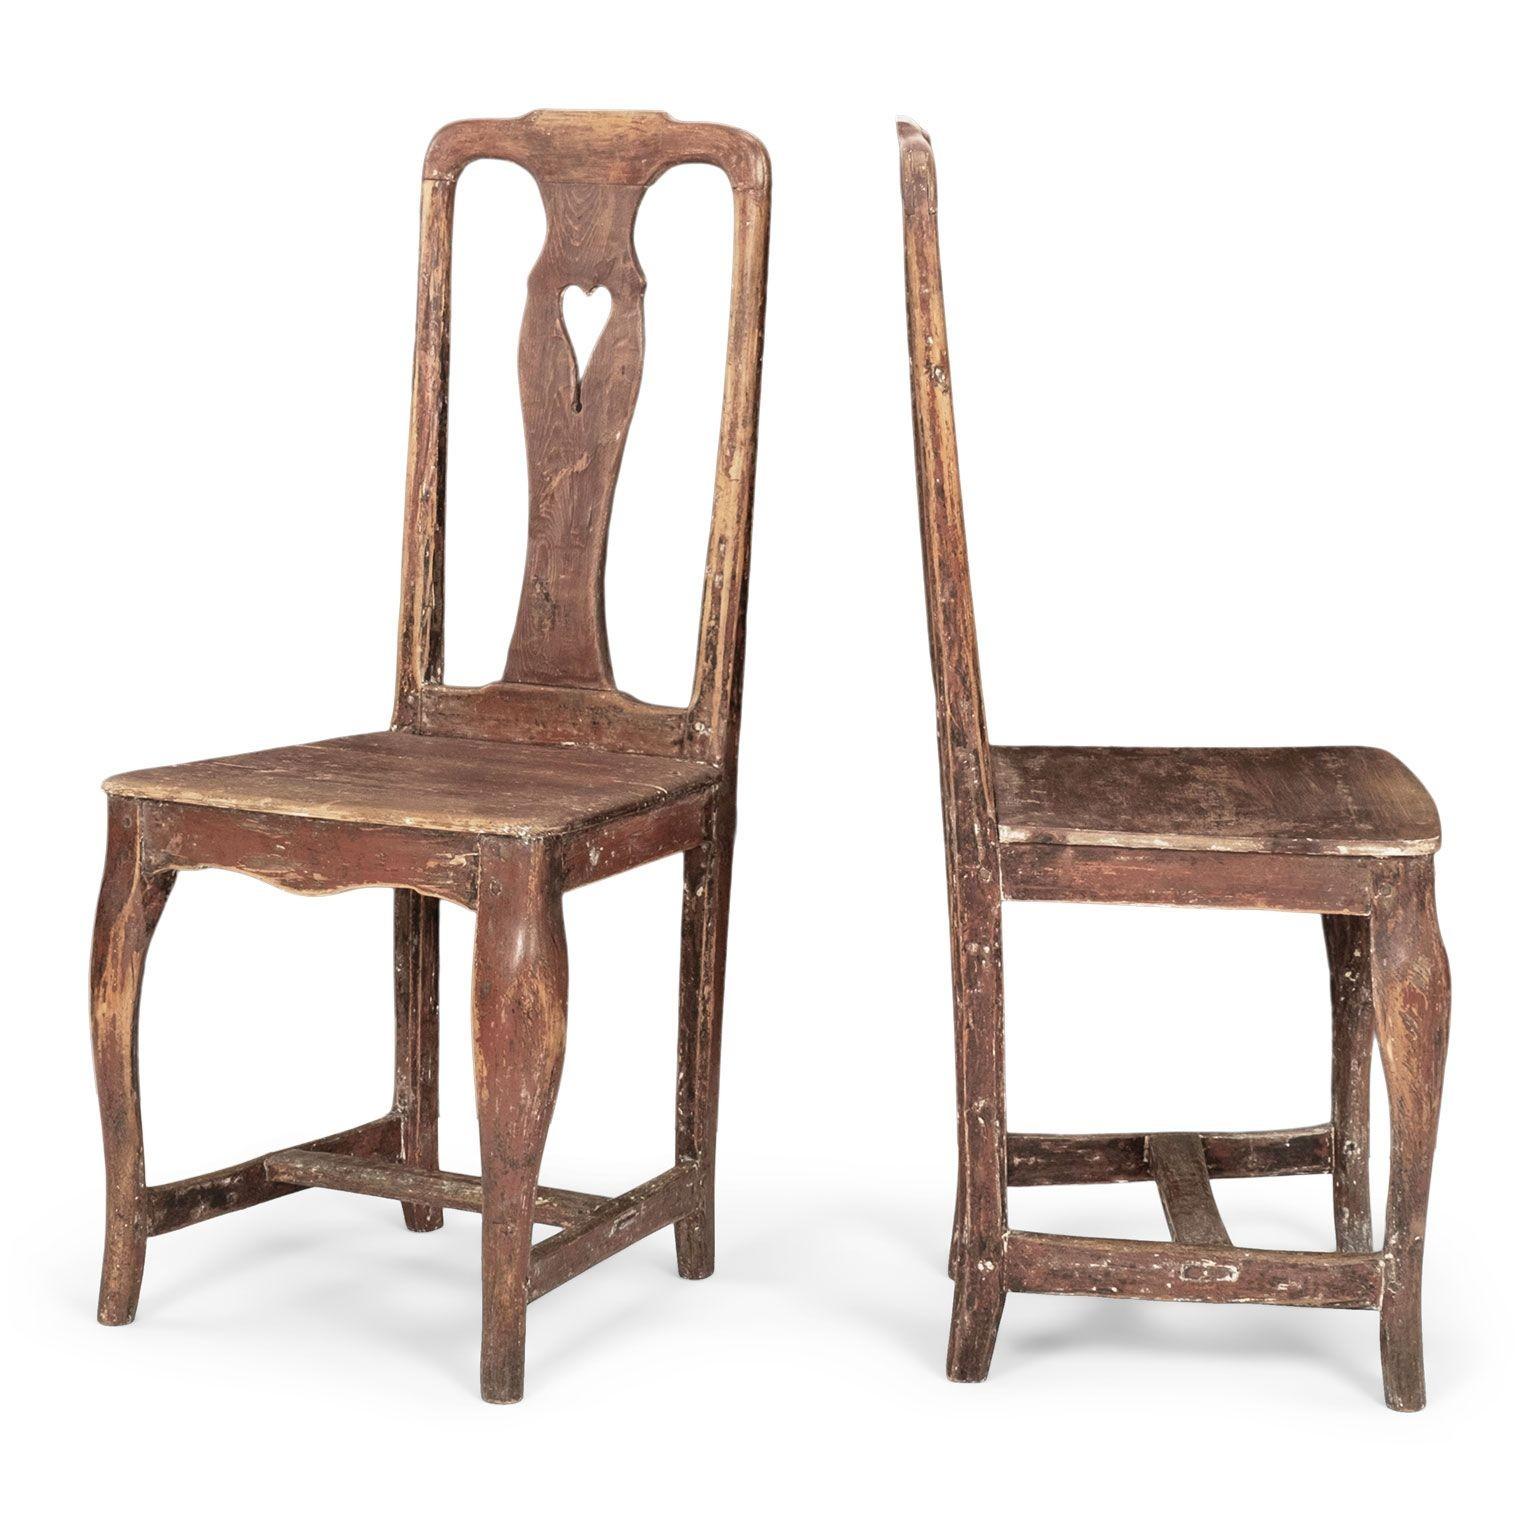 Paire de chaises suédoises d'époque rococo, sculptées à la main vers 1750-1789. Finition légèrement grattée pour retrouver les couches de peinture d'origine et les premières couches de peinture dans les tons de rouge. Vendus ensemble au prix de 2